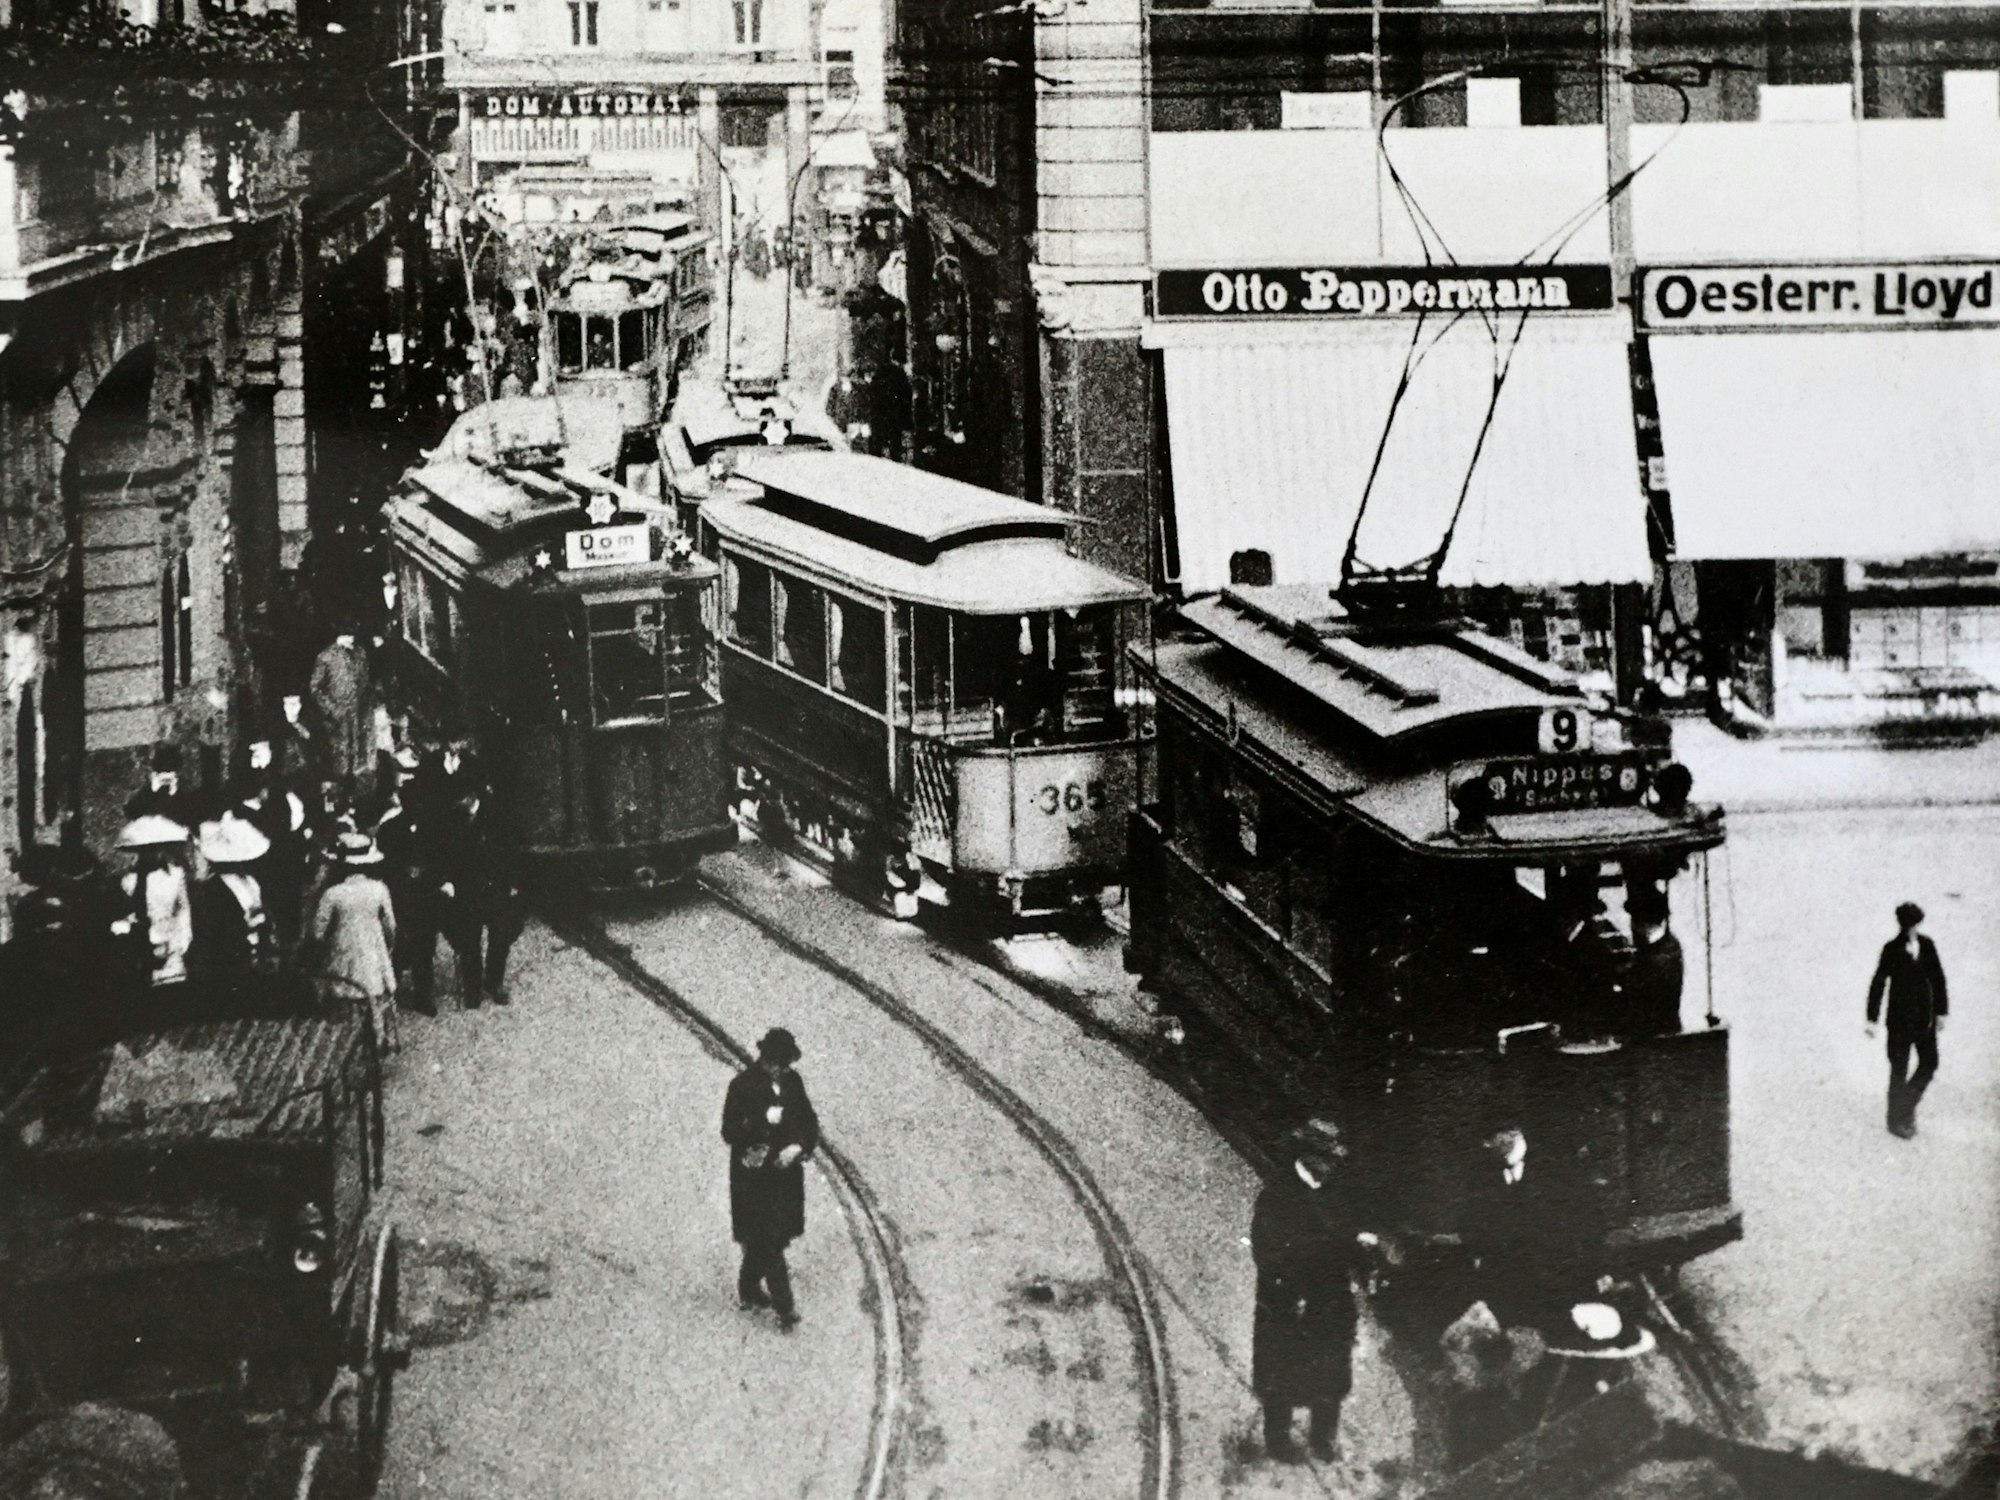 Eine alte Aufnahme der Kölner Innenstadt mit zwei Straßenbahnen.

